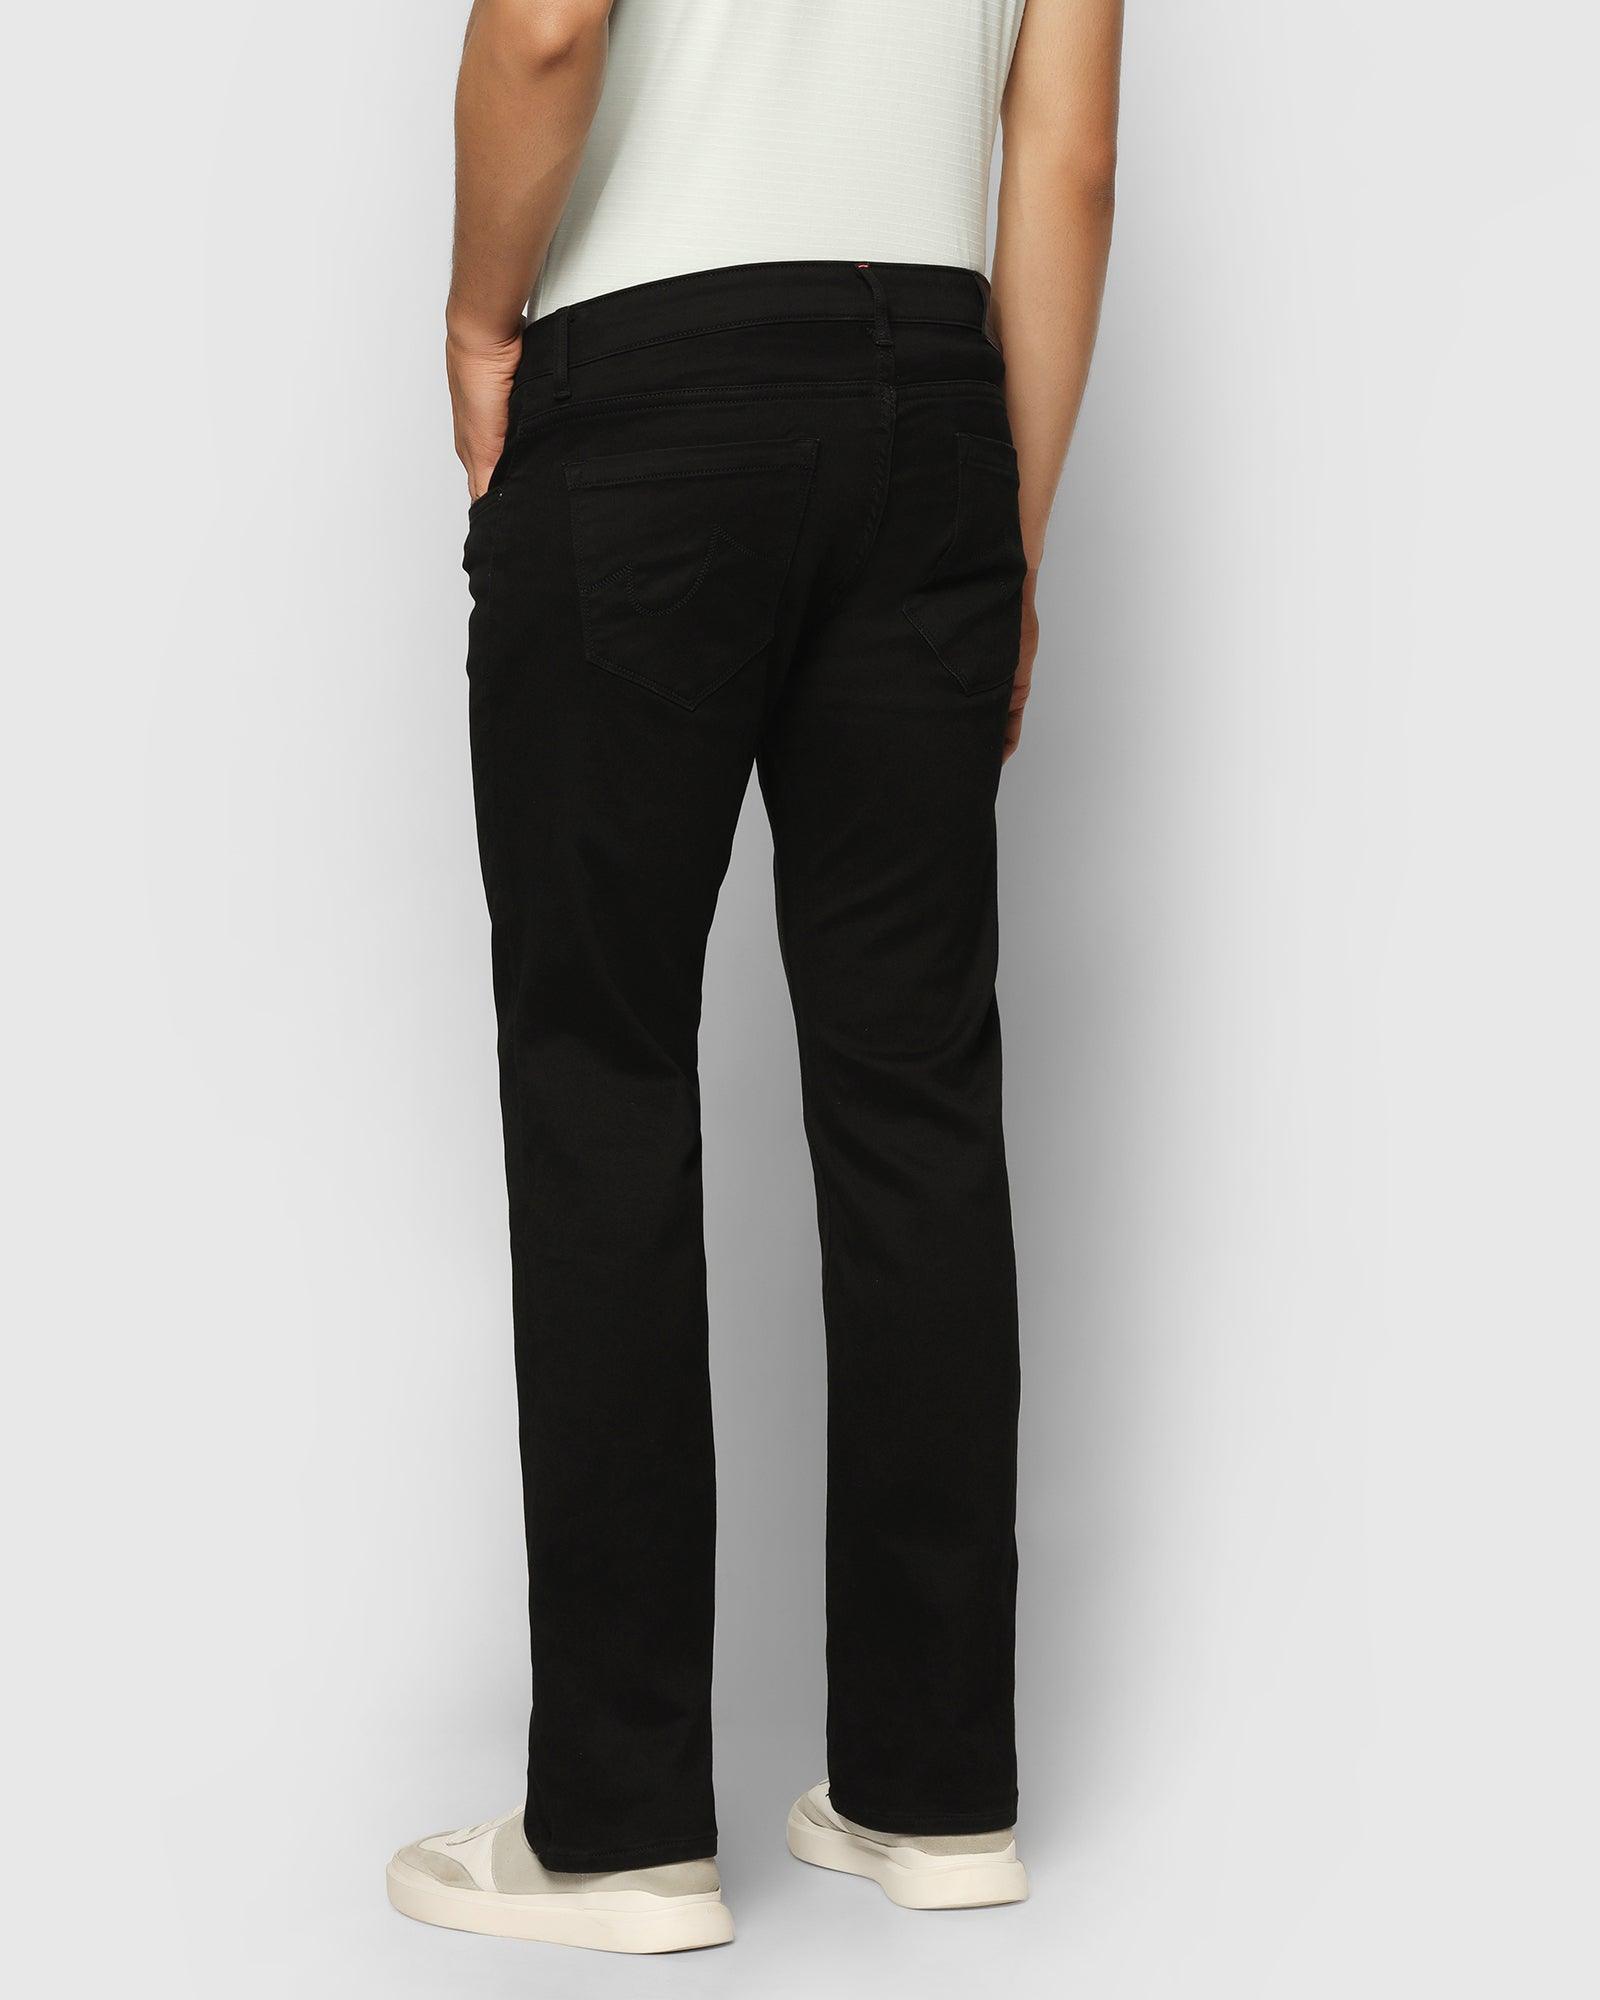 Ultrasoft Straight Comfort Duke Fit Black Jeans - Alva